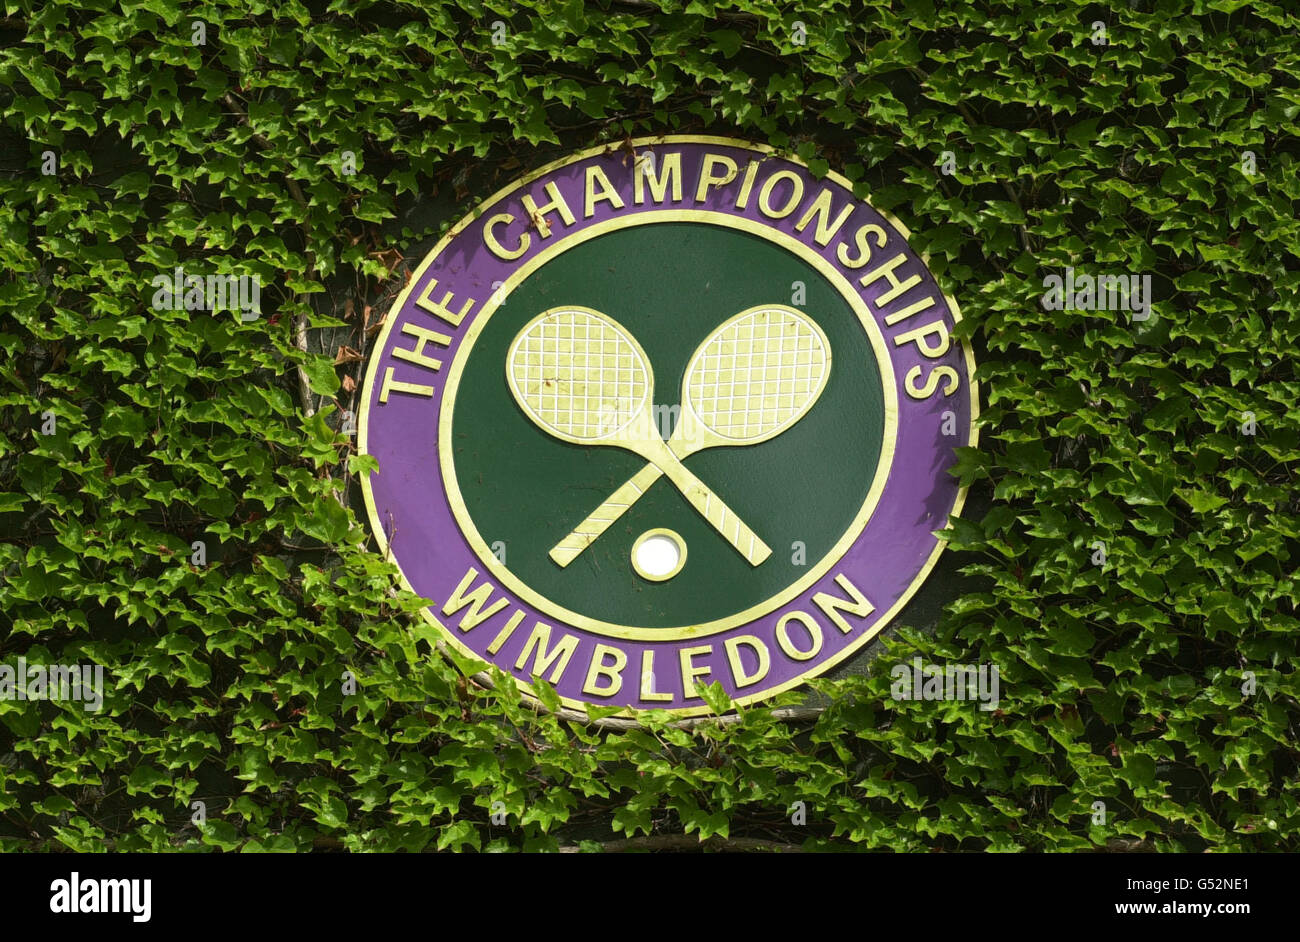 PAS D'UTILISATION COMMERCIALE : le logo des championnats de tennis de Wimbledon. Banque D'Images